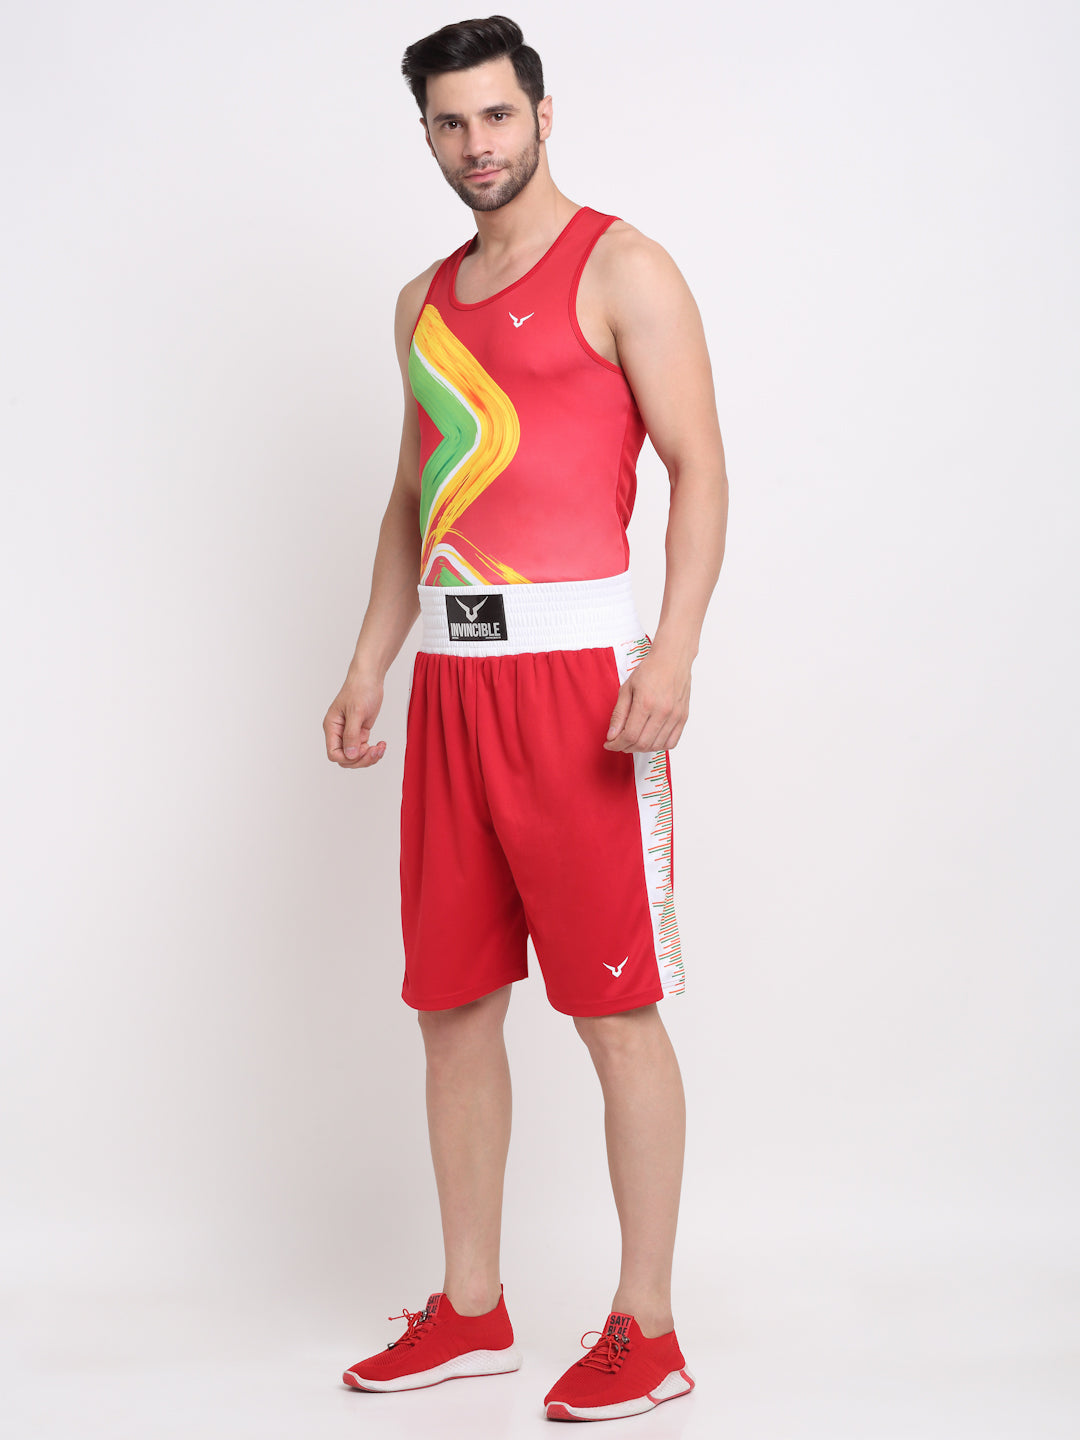 Invincible Men's Competition Boxing Set - Boxing Uniform Short & Vest Set Light Weight Sports Dress Boxing Suit